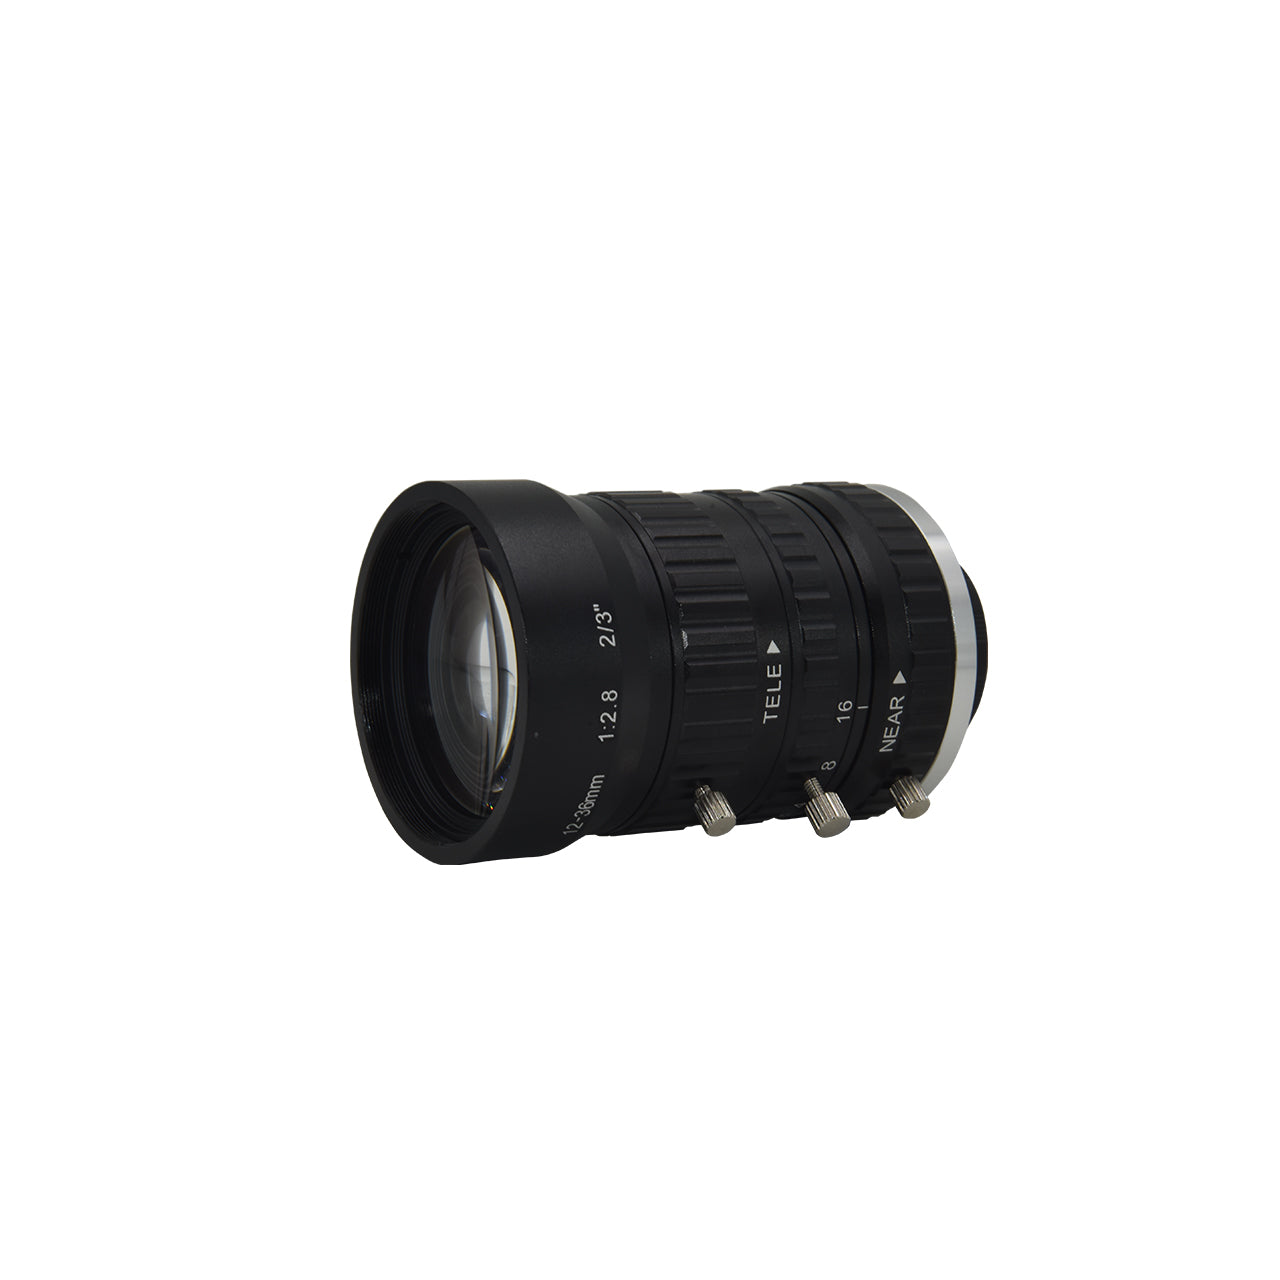 1/1.7" 12MP CS-Mount Auto Focus and Auto Zoom Lenses